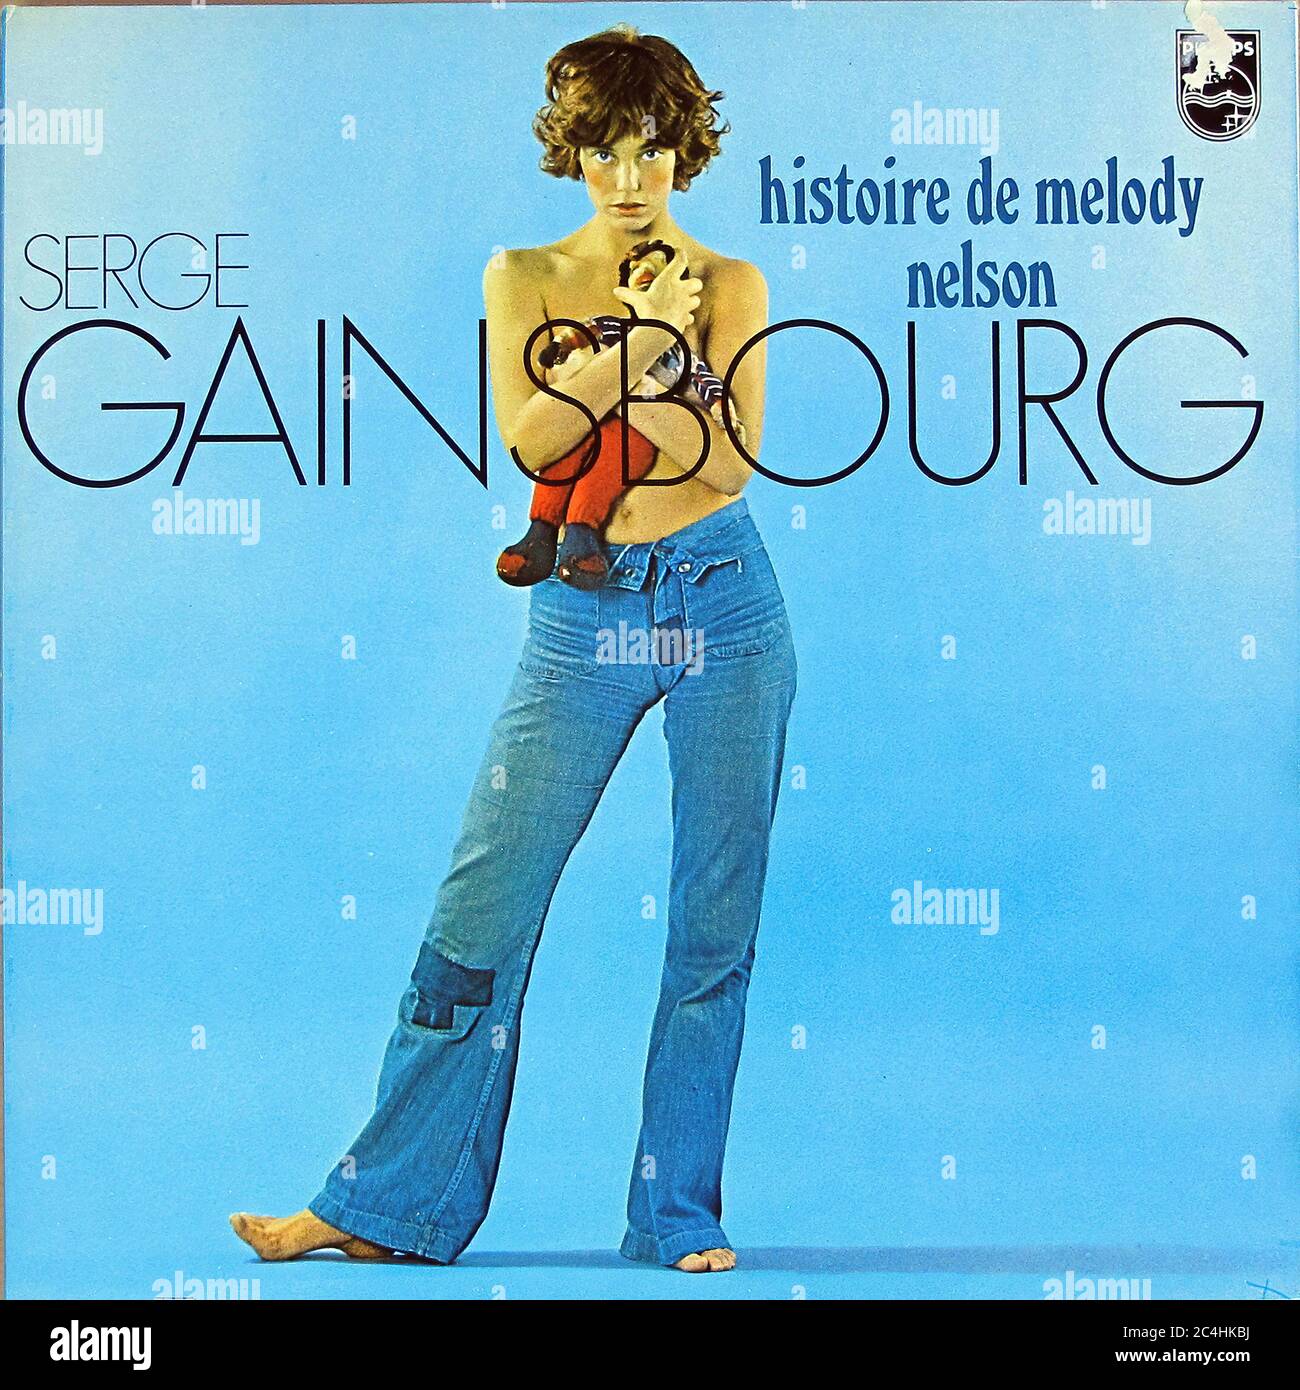 SERGE GAINSBOURG HISTOIRE DE MELODY NELSON COUVERTURE 12'' LP VINYLE - COUVERTURE DE DISQUE VINTAGE 01 Banque D'Images